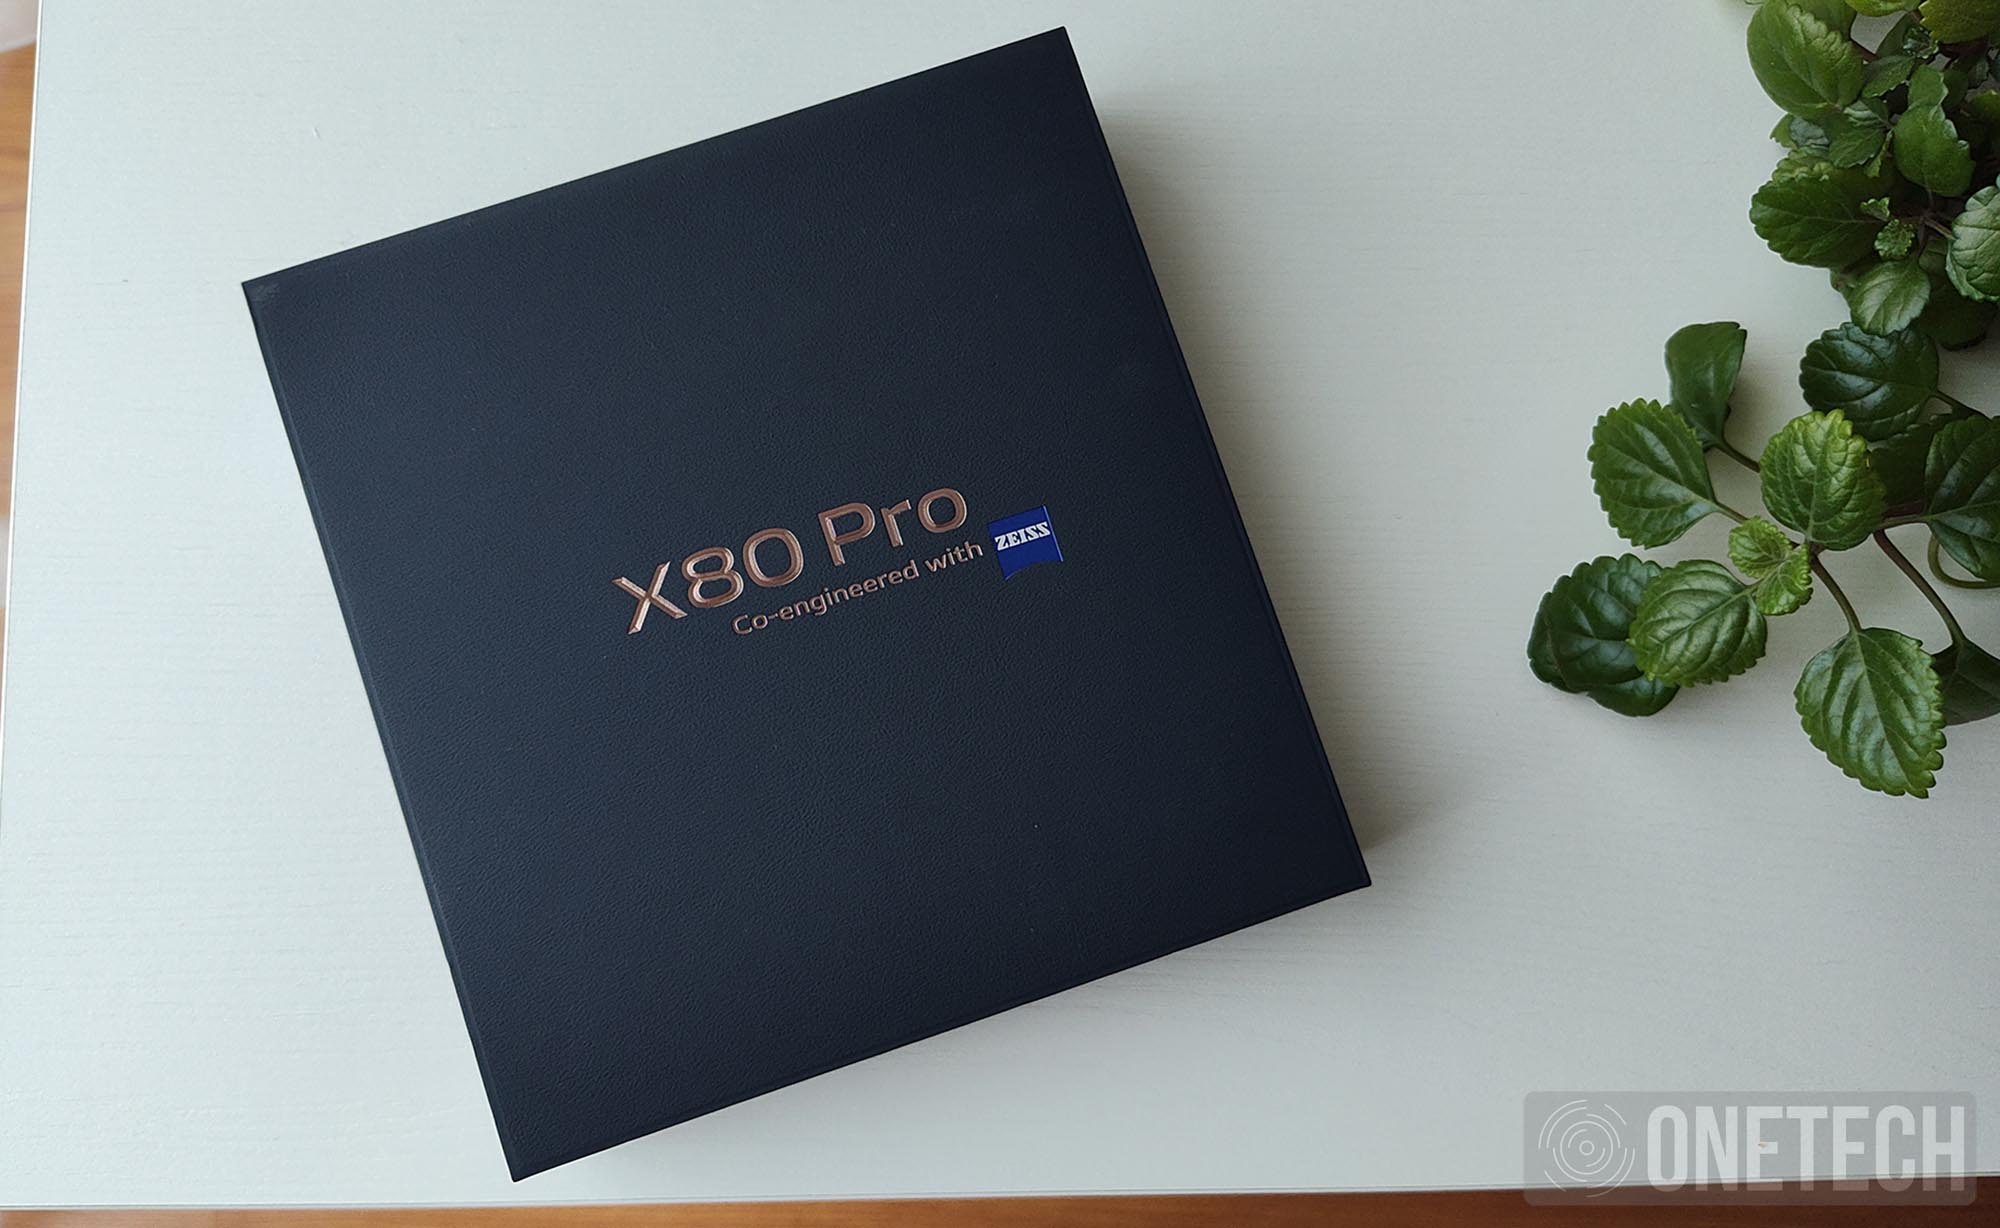 Vivo X80 Pro: un gigante con una fotografía estelar - Análisis 2